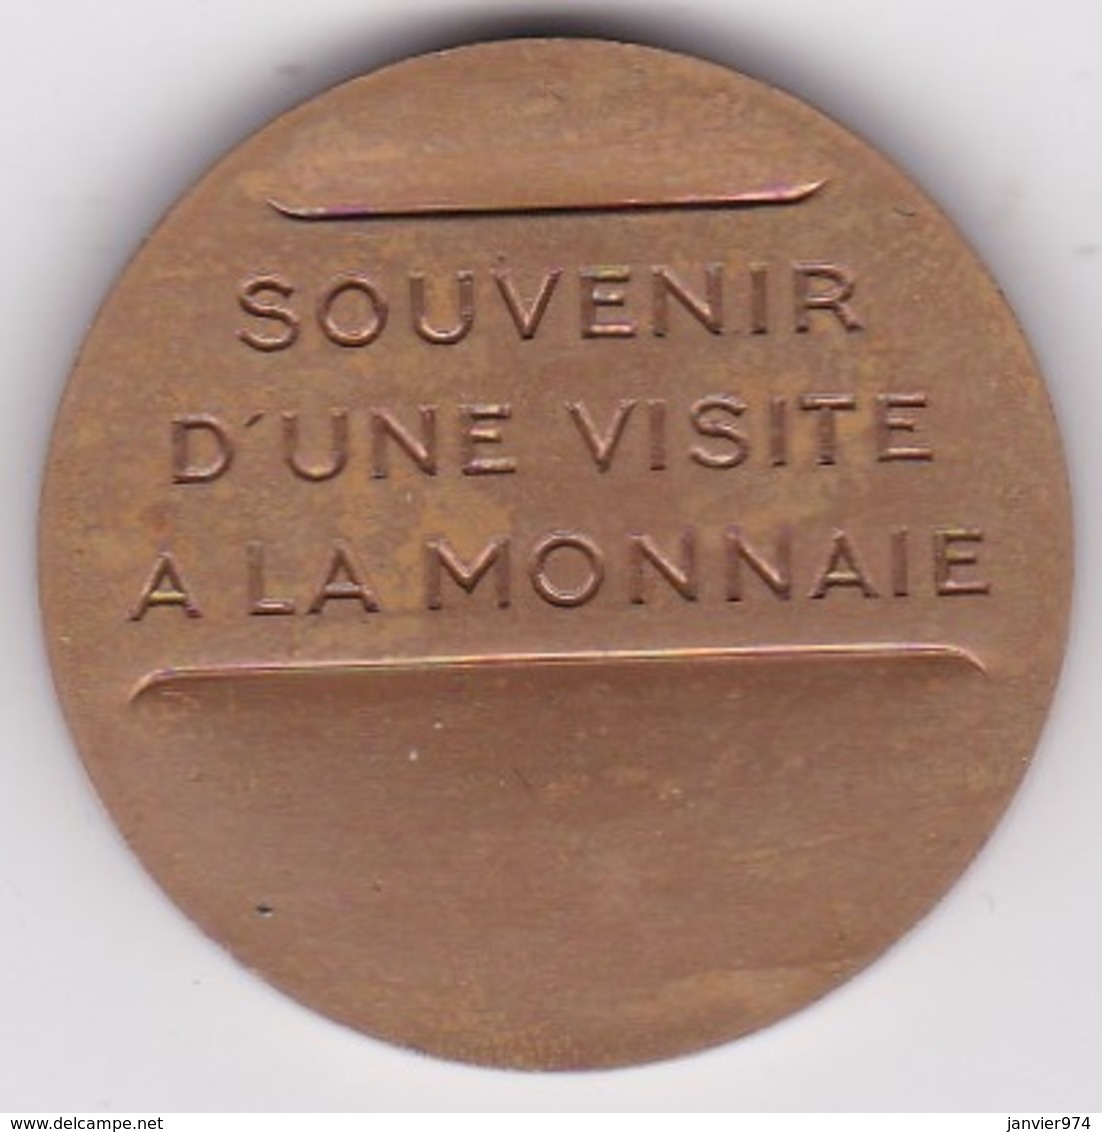 Jeton En Bronze Souvenir D'une Visite à La Monnaie. Paris - Professionnels / De Société